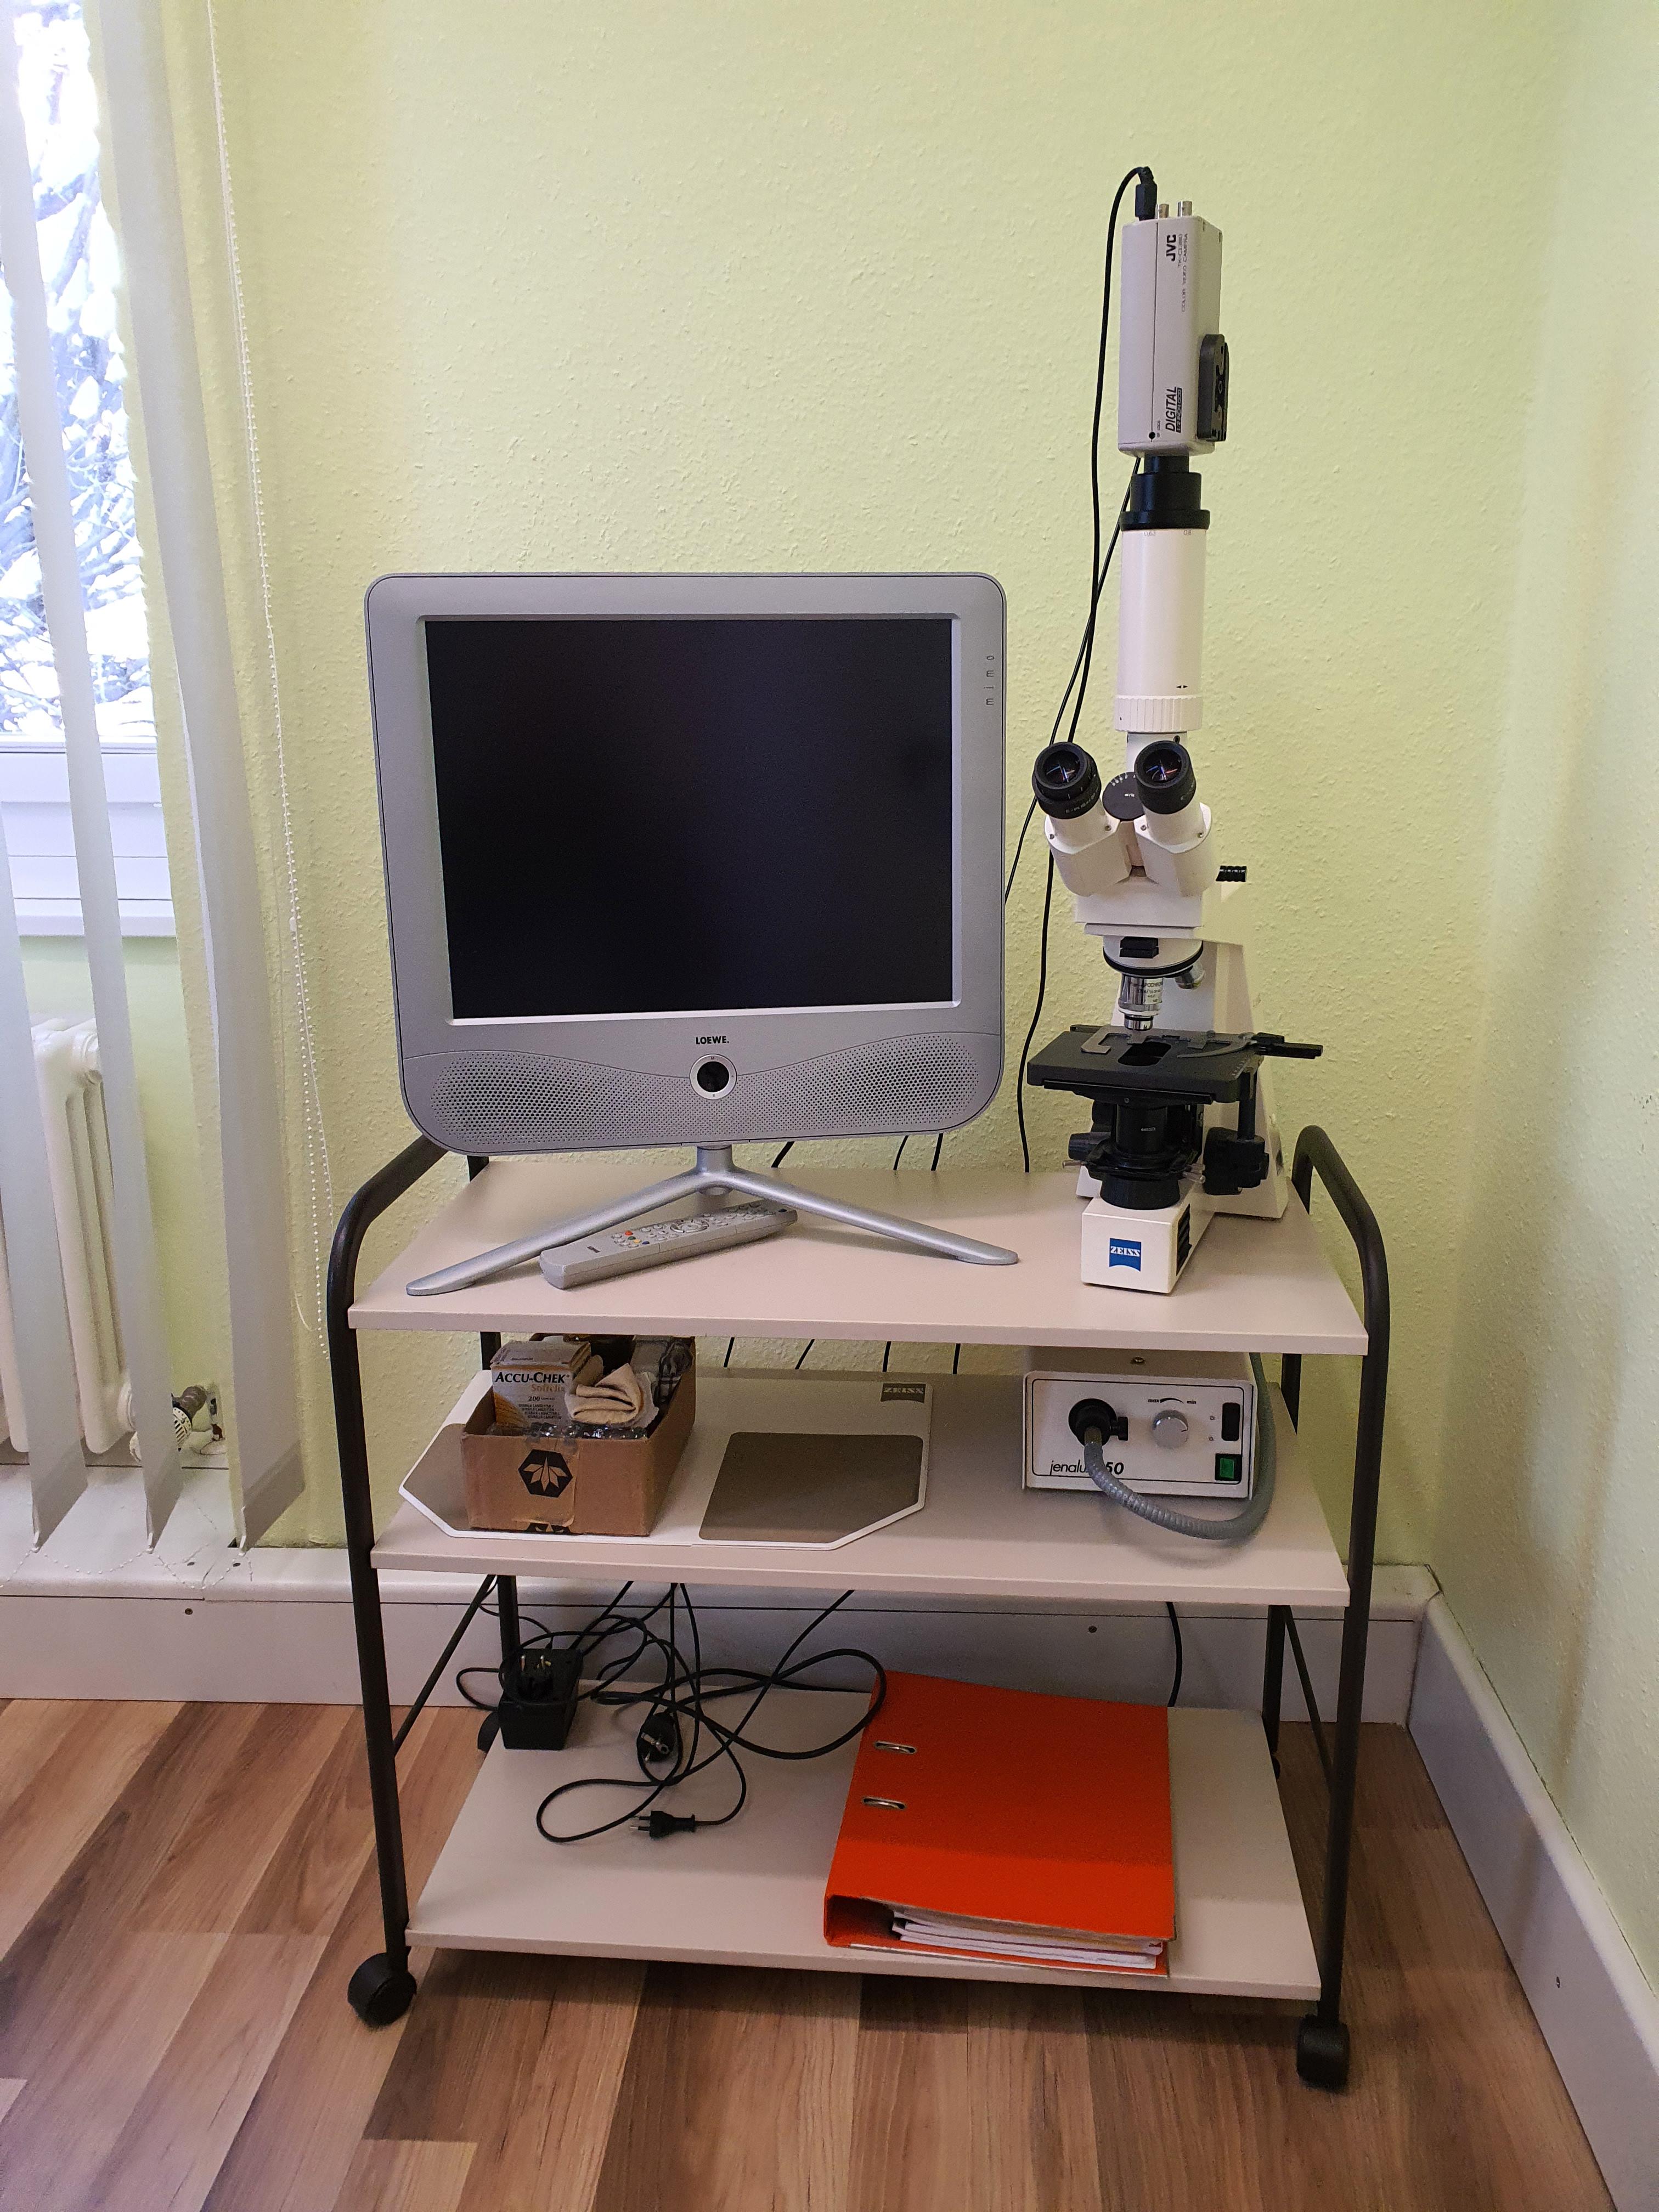 Zeiss Axiolab Dunkelfeldmikroskop mit Bildschirm